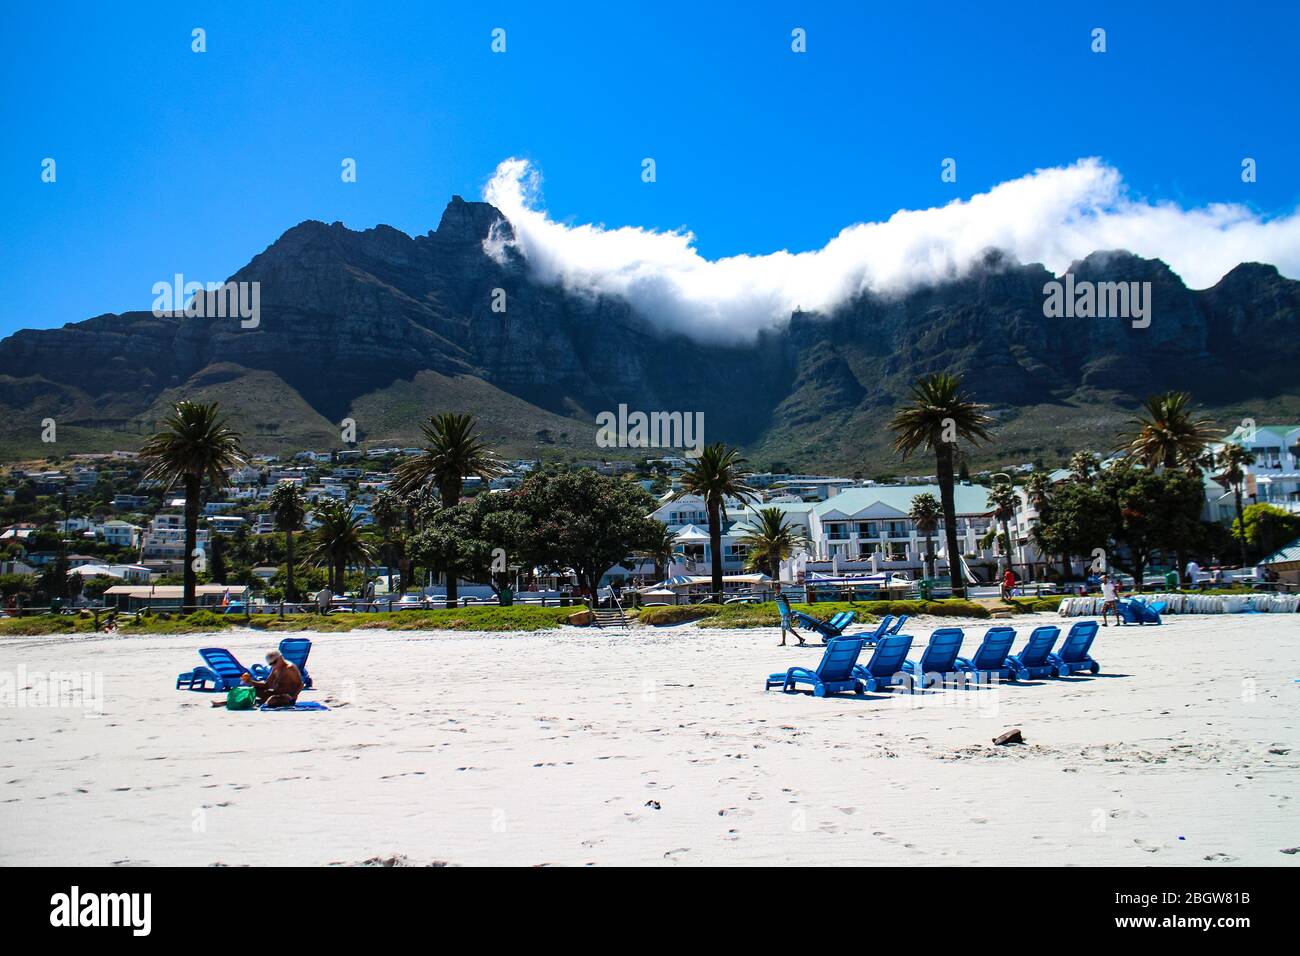 La vie de plage de la baie du camp avec le parc national de Table Mountain chaîne de montagnes en arrière-plan, le Cap, le Cap occidental, Afrique du Sud. Banque D'Images